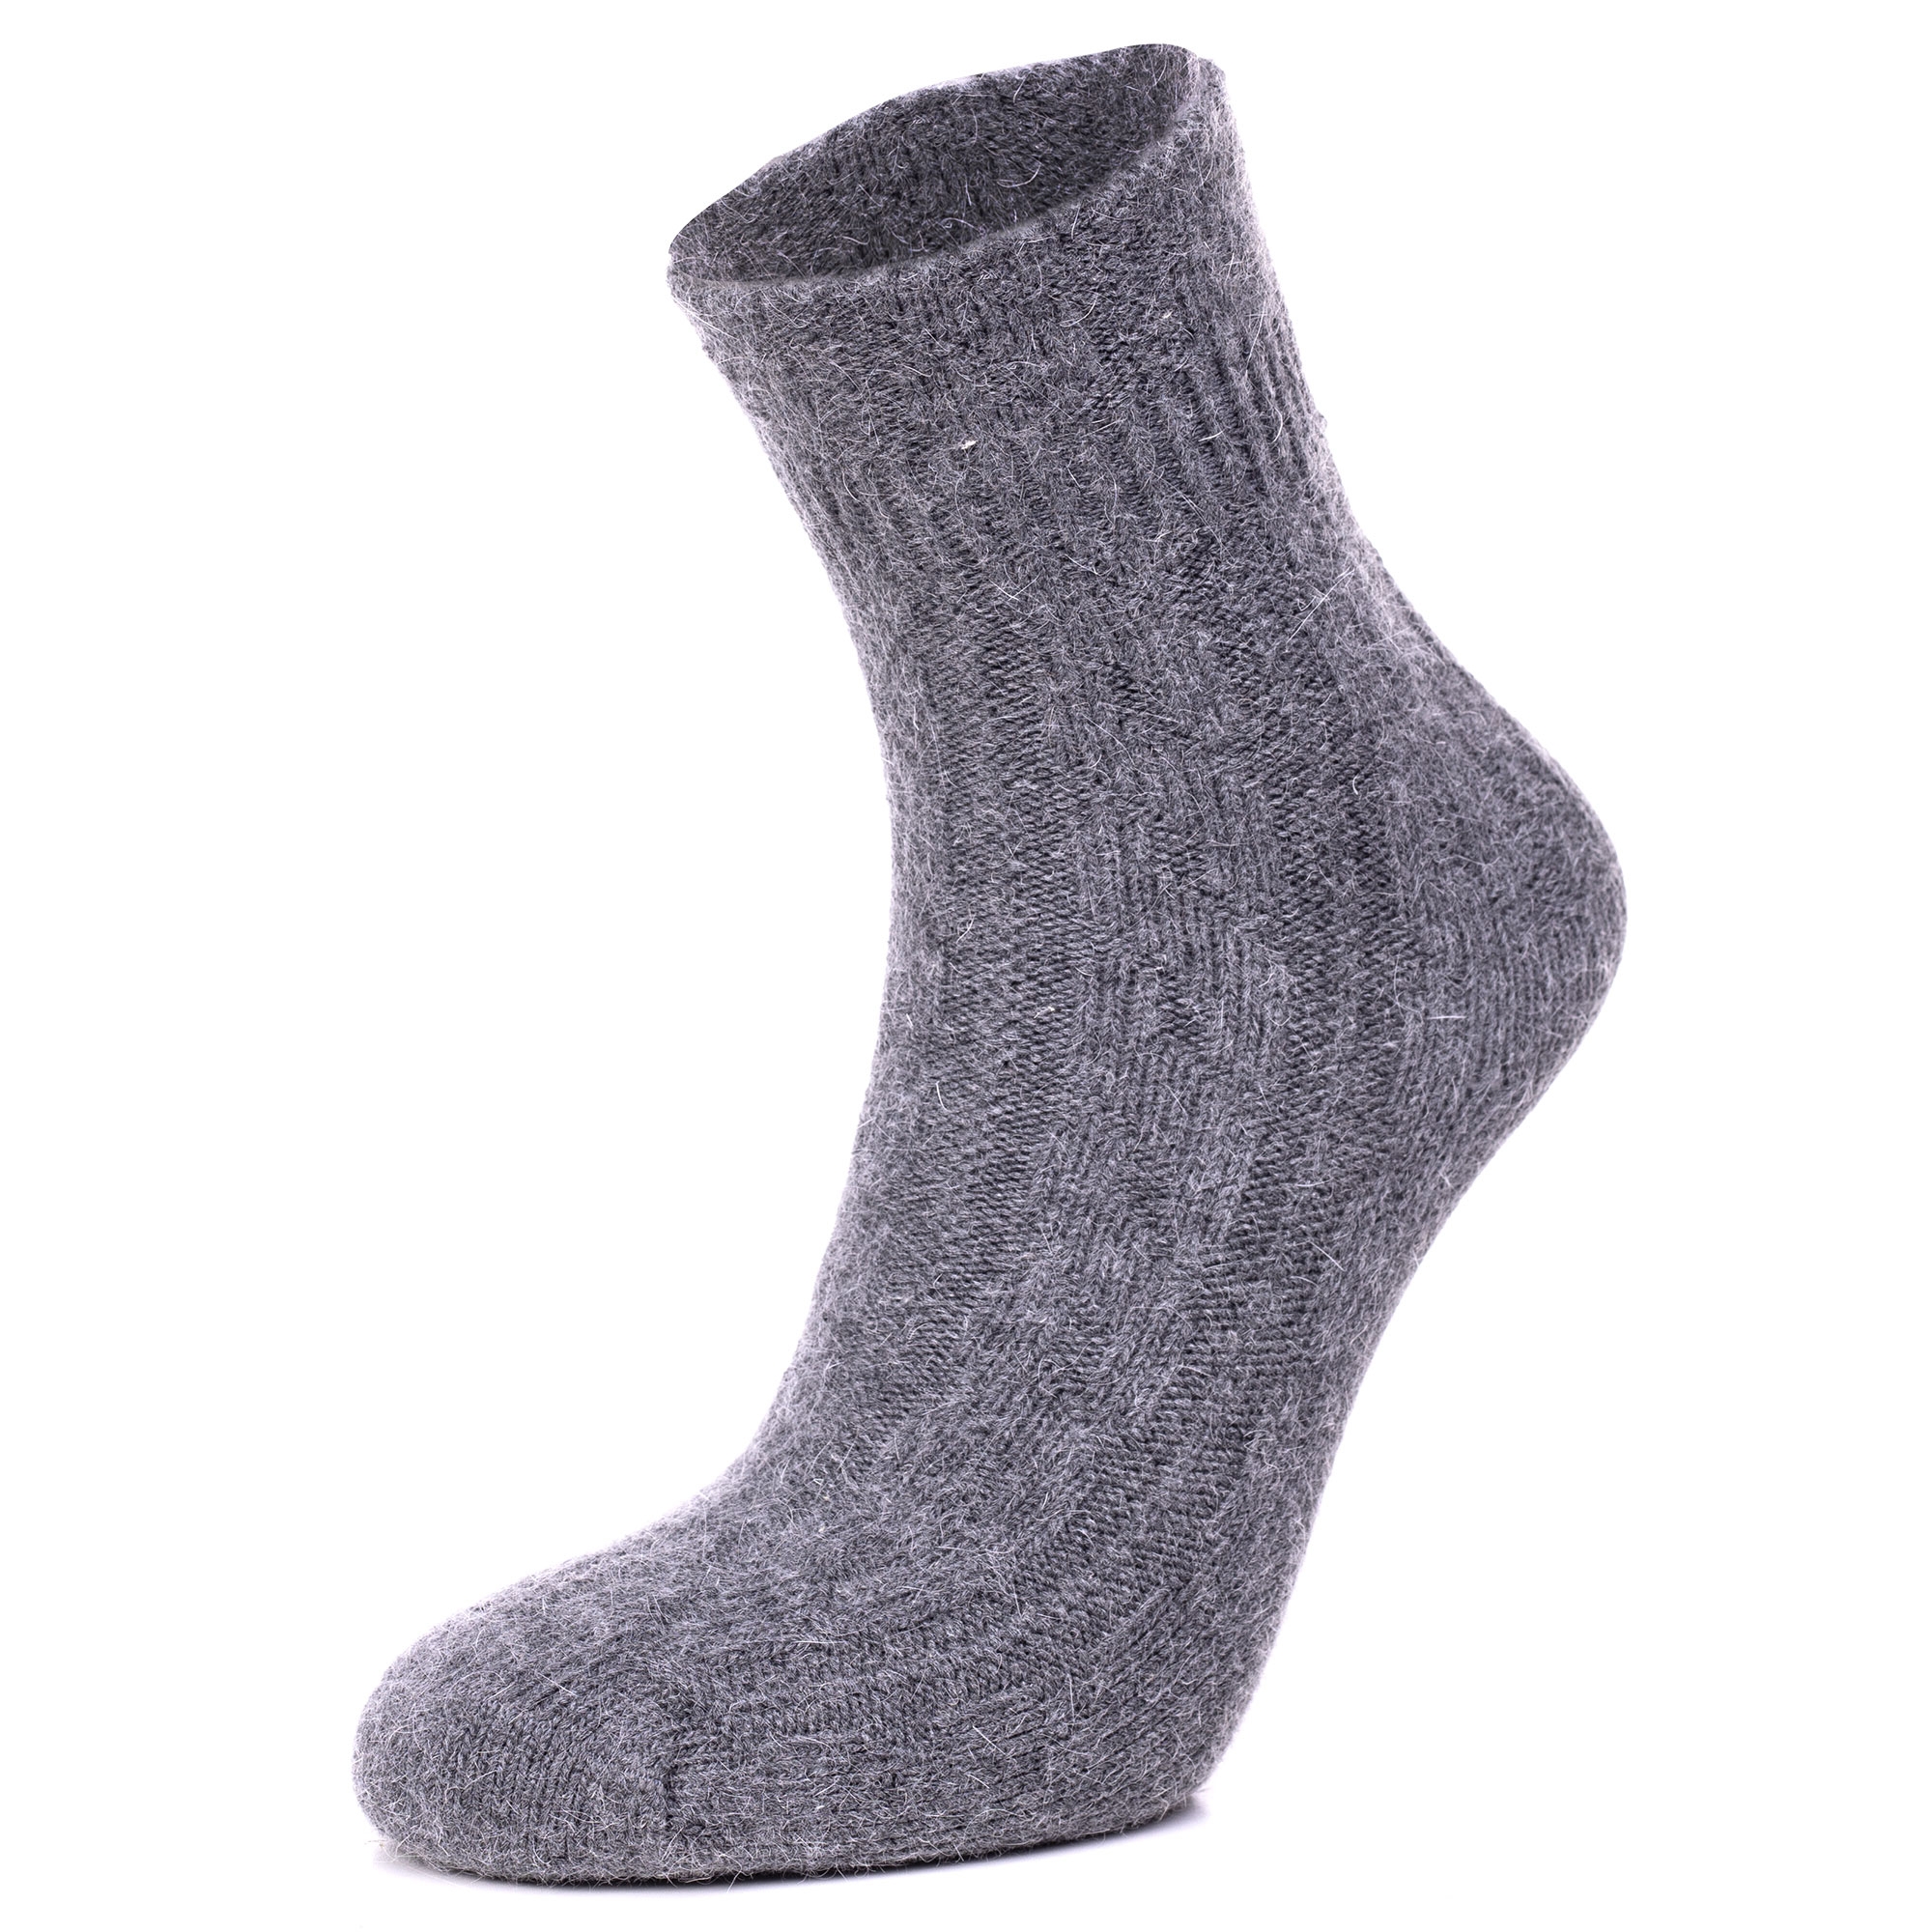 Grå sokker i strikkvalitet fra Note